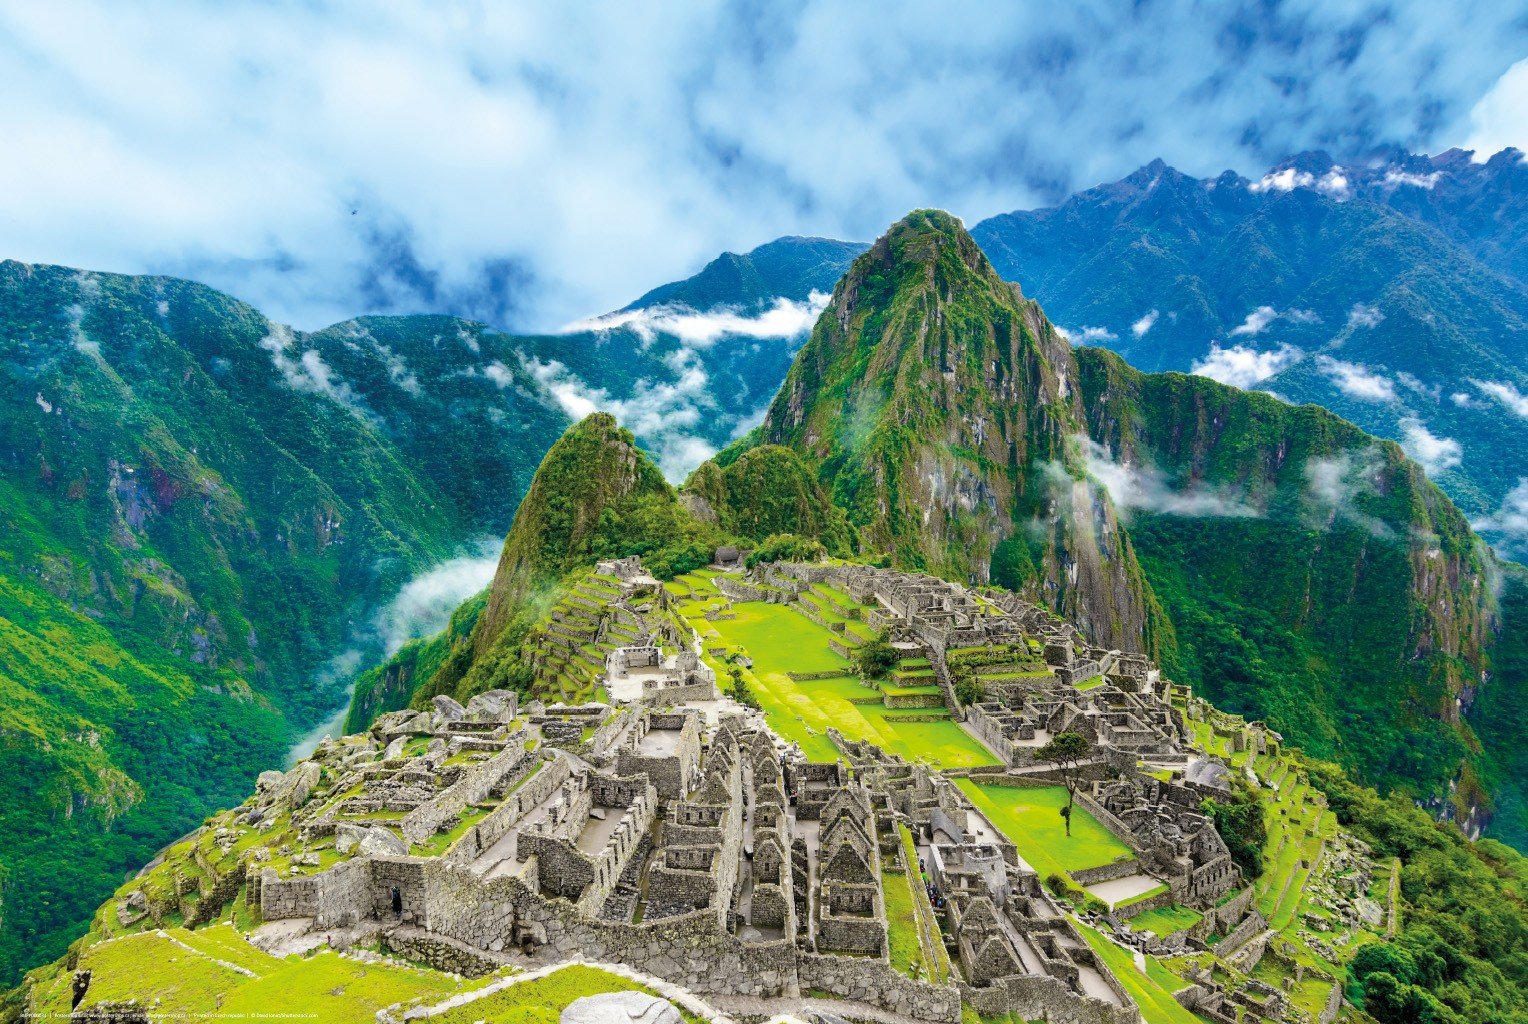 Plagát: Machu Picchu